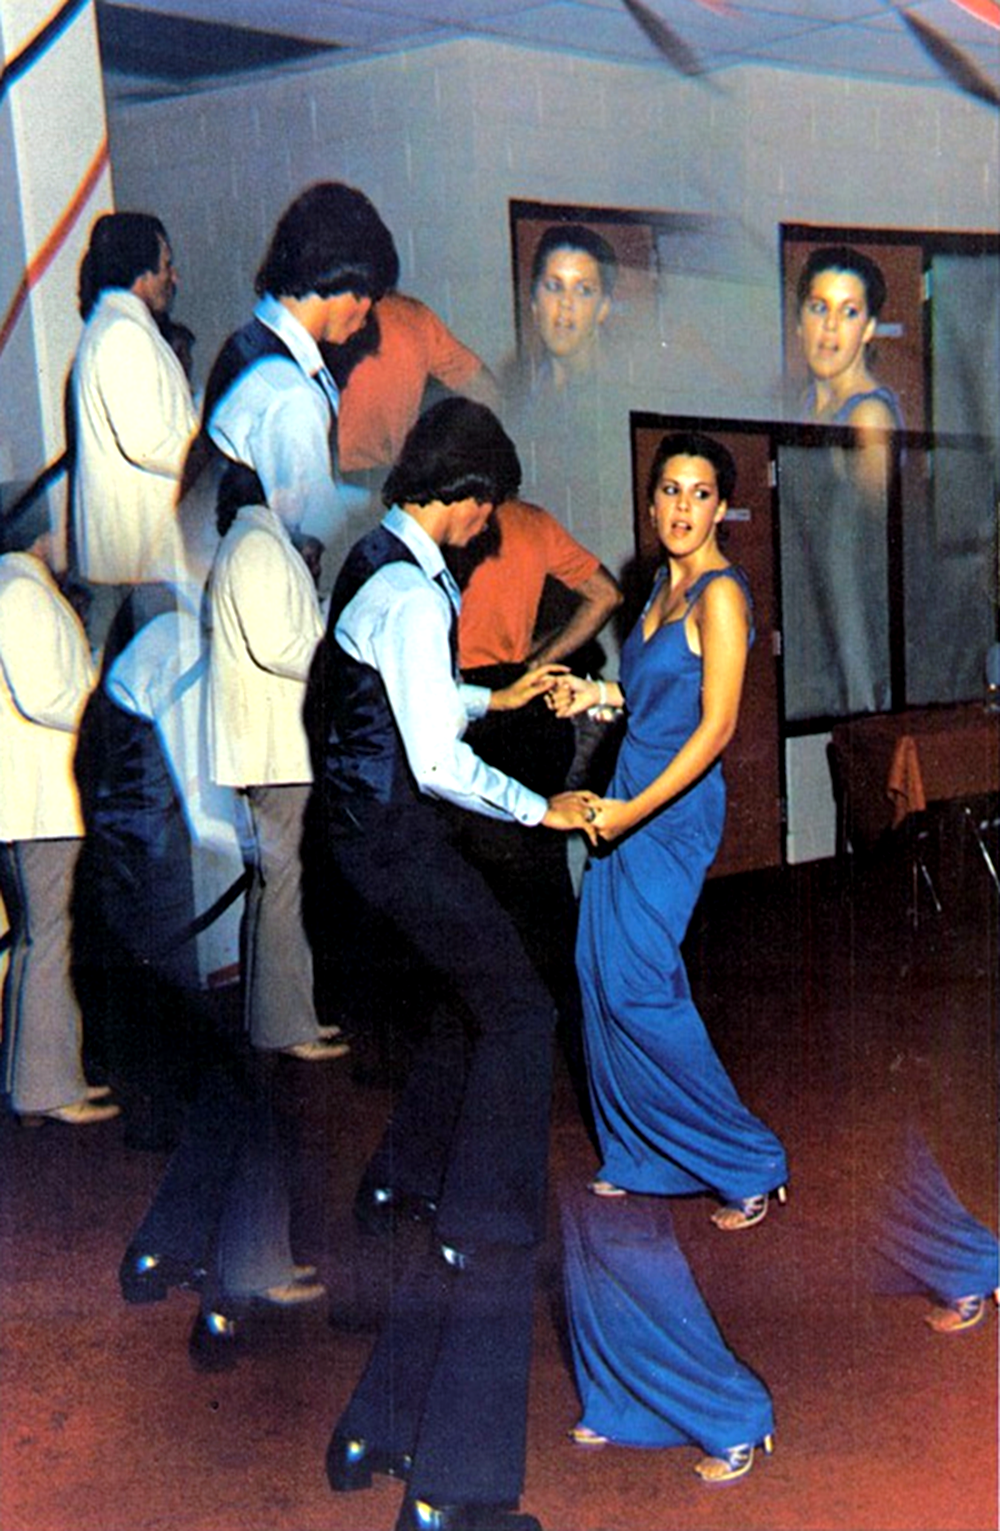 1970s dancers